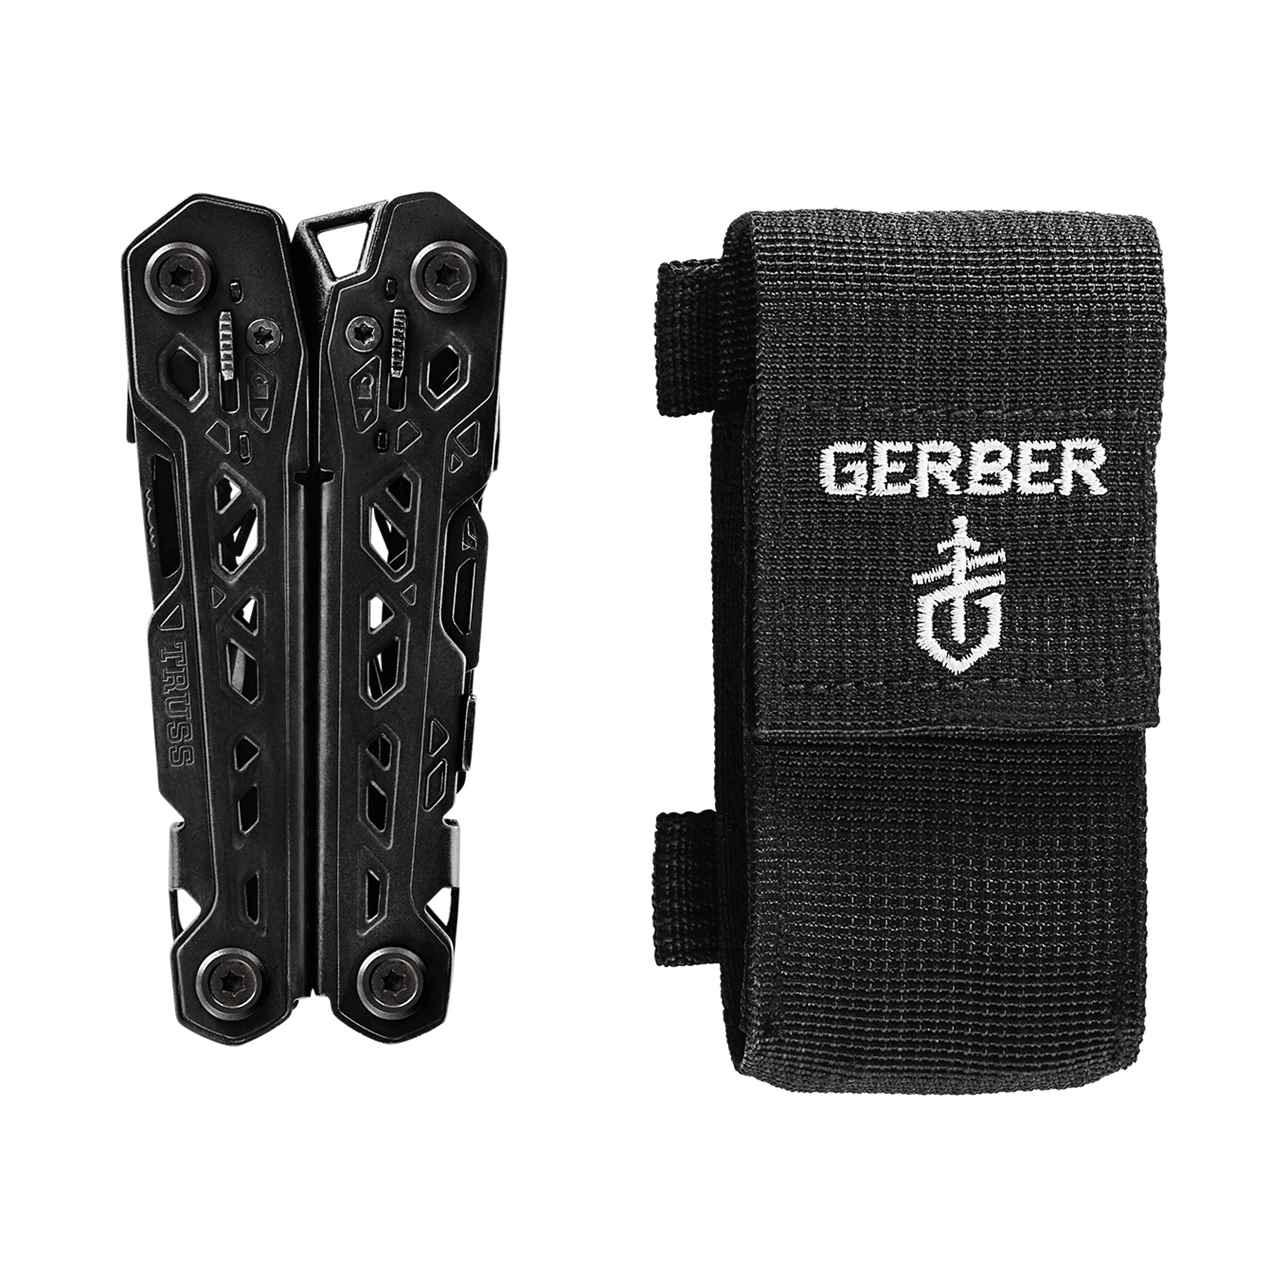 Gerber Truss Multi-tool - Black (Multiverktyg) från Gerber. | TacNGear - Utrustning för polis och militär och outdoor.